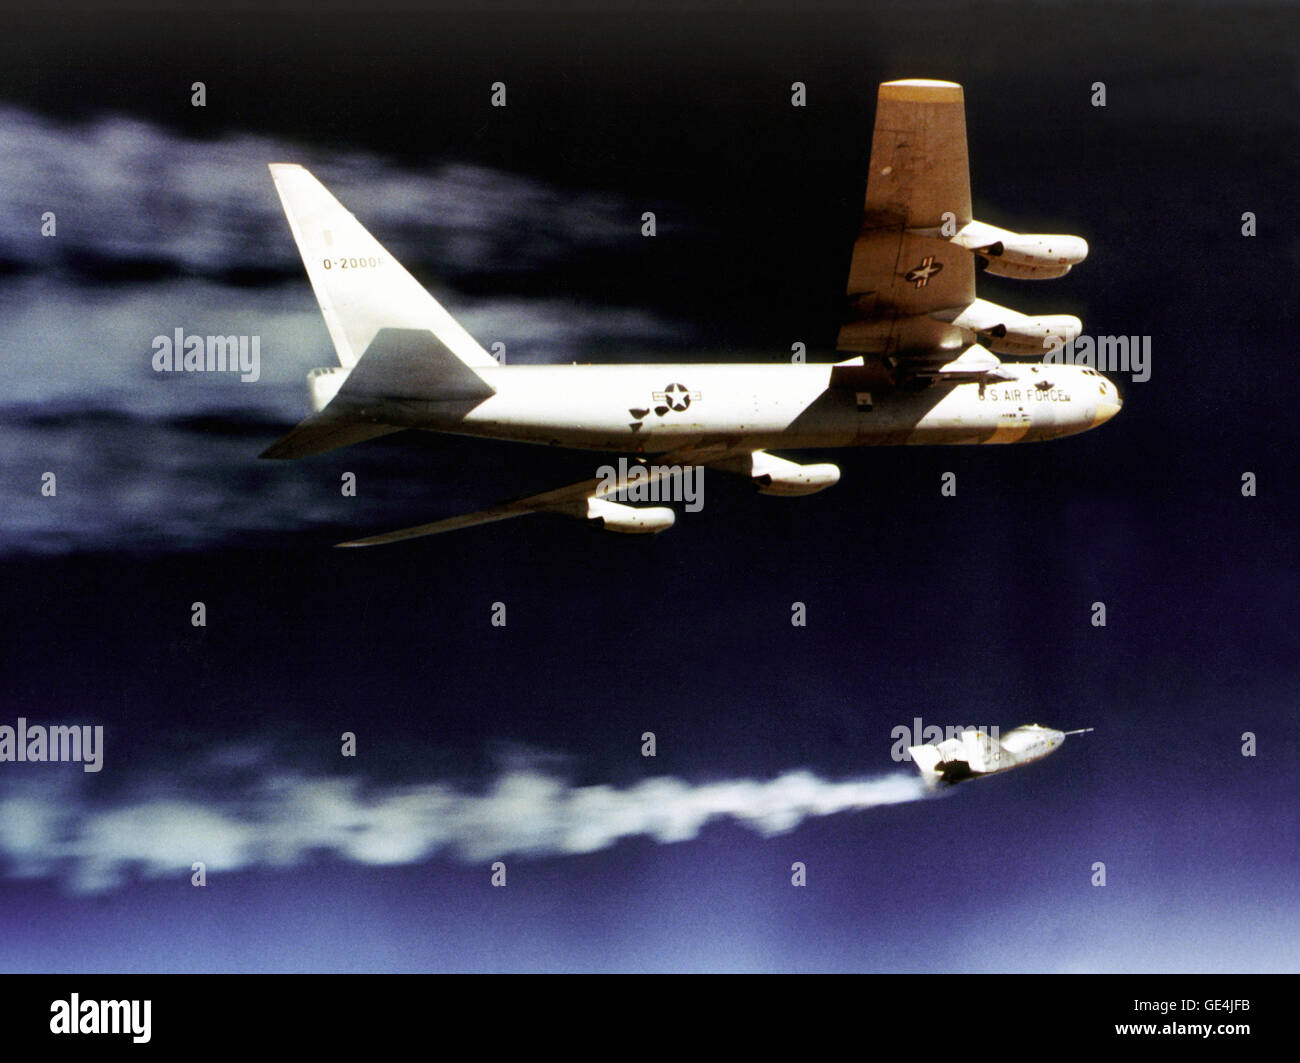 L'X-24un sollevamento-corpo aerei di ricerca inizia il suo razzo-powered volo dopo essere stato lanciato dalla ala della NASA B-52 mothership durante un 1970 Ricerca volo. La NASA B-52, Numero di coda 008, è un lancio di aria vettore aereo, "mothership", nonché la ricerca di una piattaforma di aeromobili che è stato utilizzato su una varietà di progetti di ricerca. Il velivolo, un modello "B" costruita nel 1952 e primo volo il 11 giugno 1955, è il più antico B-52 a volare ed è stato utilizzato su alcuni dei più importanti progetti di ricerca in campo aerospaziale della storia. Di alcuni significativi progetti supportati Foto Stock